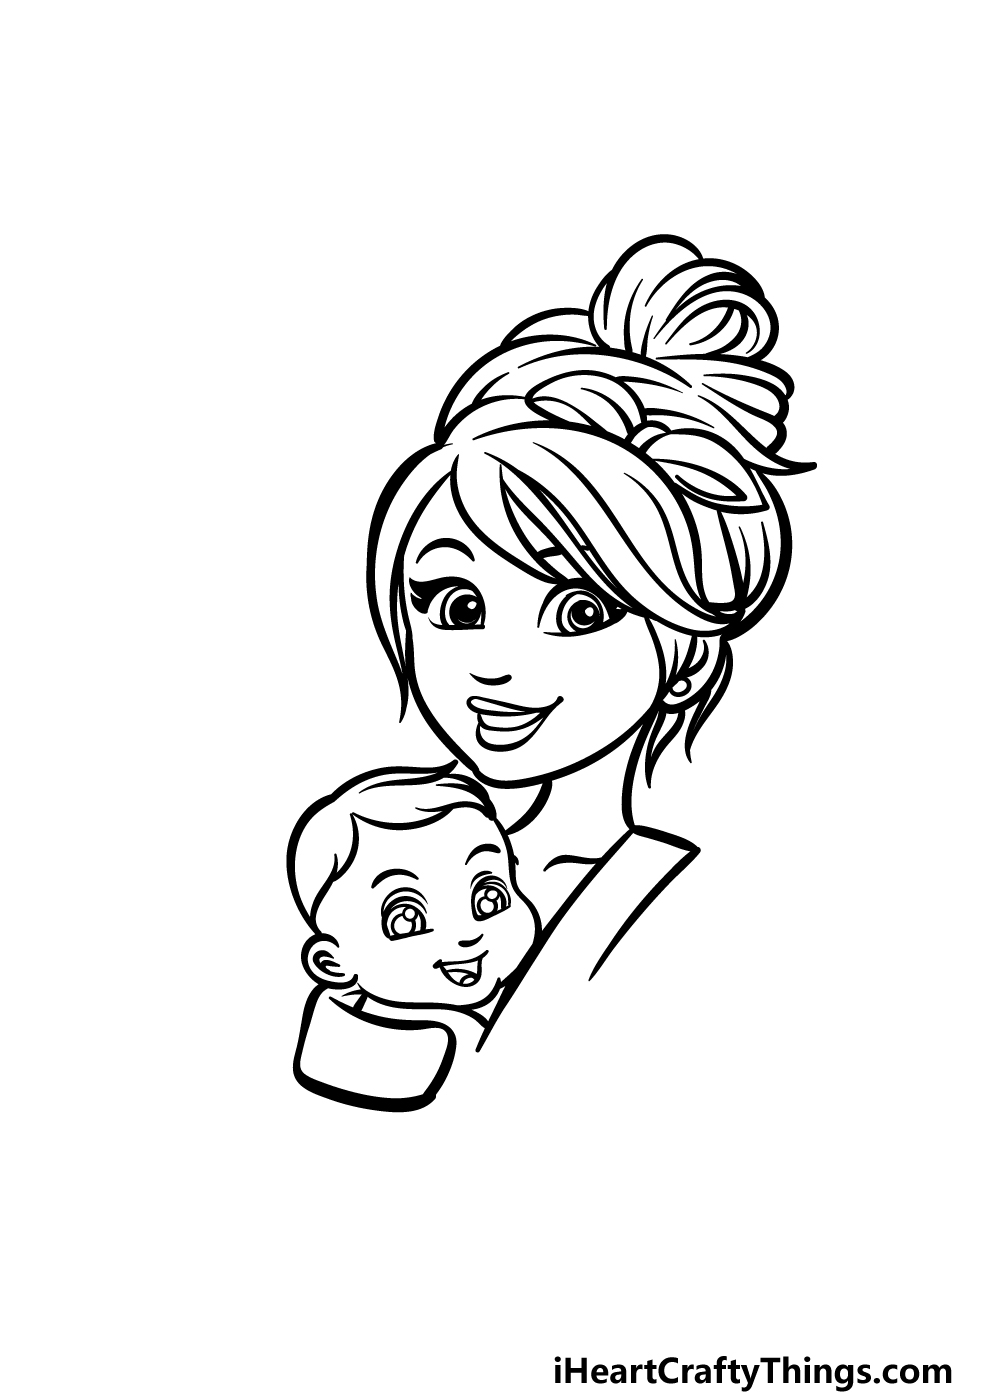 how to draw a cartoon mom step 3